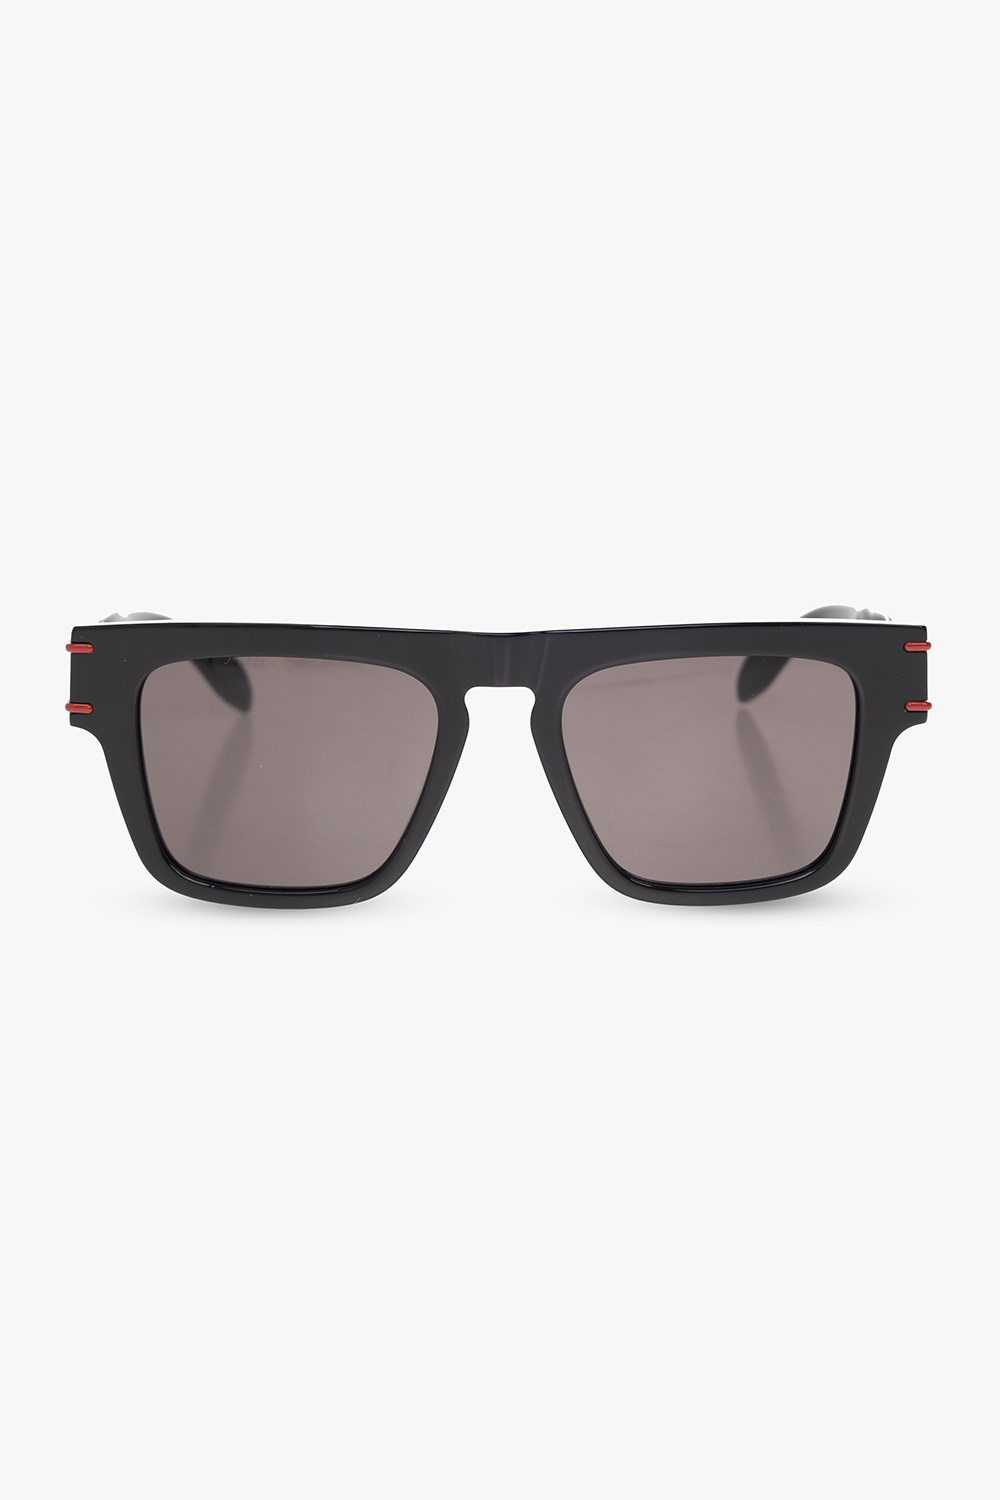 SVNX visor sunglasses in black - Black SVNX visor sunglasses in